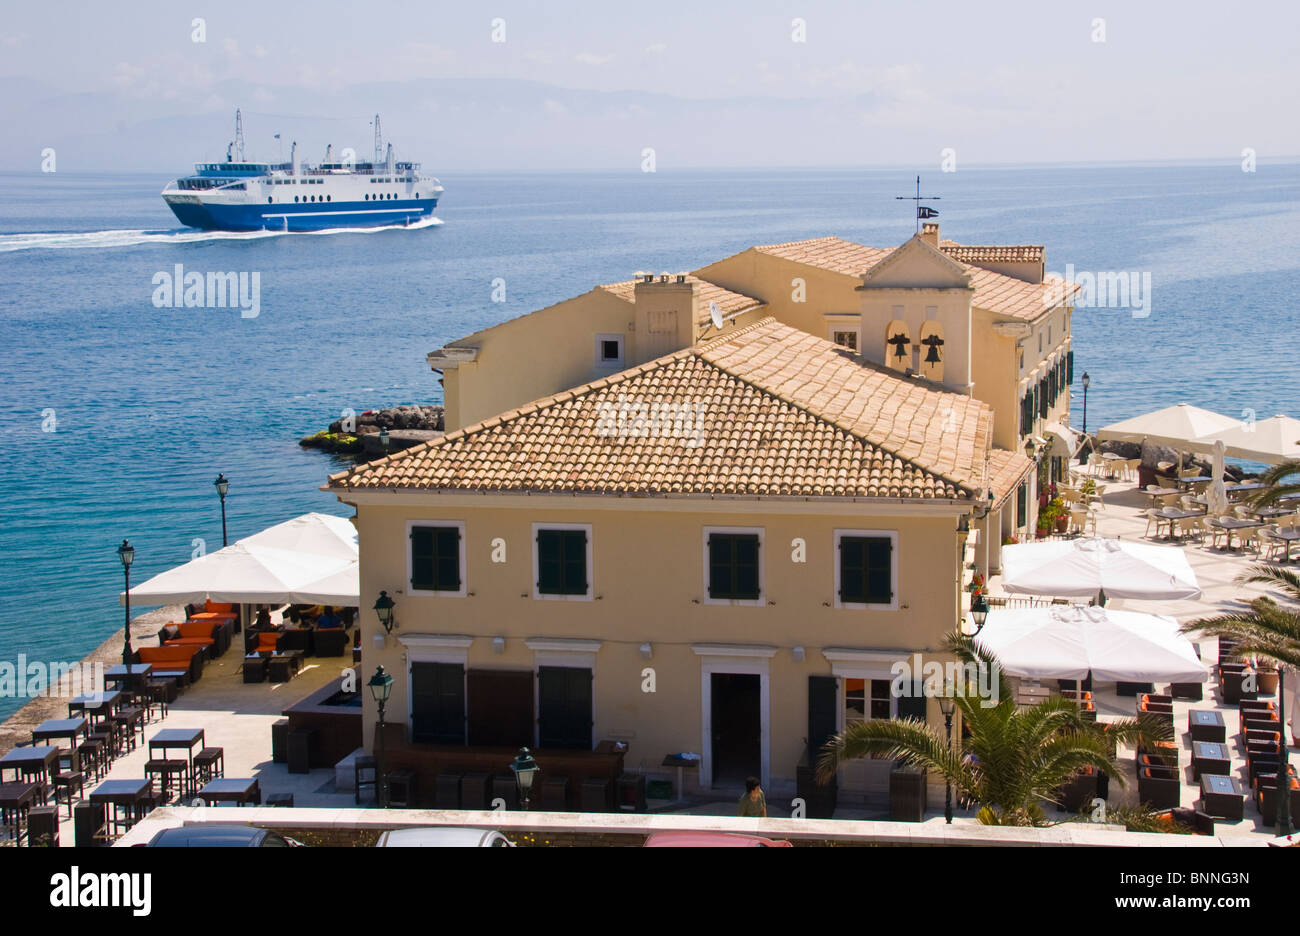 Blick auf die alte Festung Café in Korfu-Stadt auf der griechischen Insel Korfu Griechenland GR Stockfoto